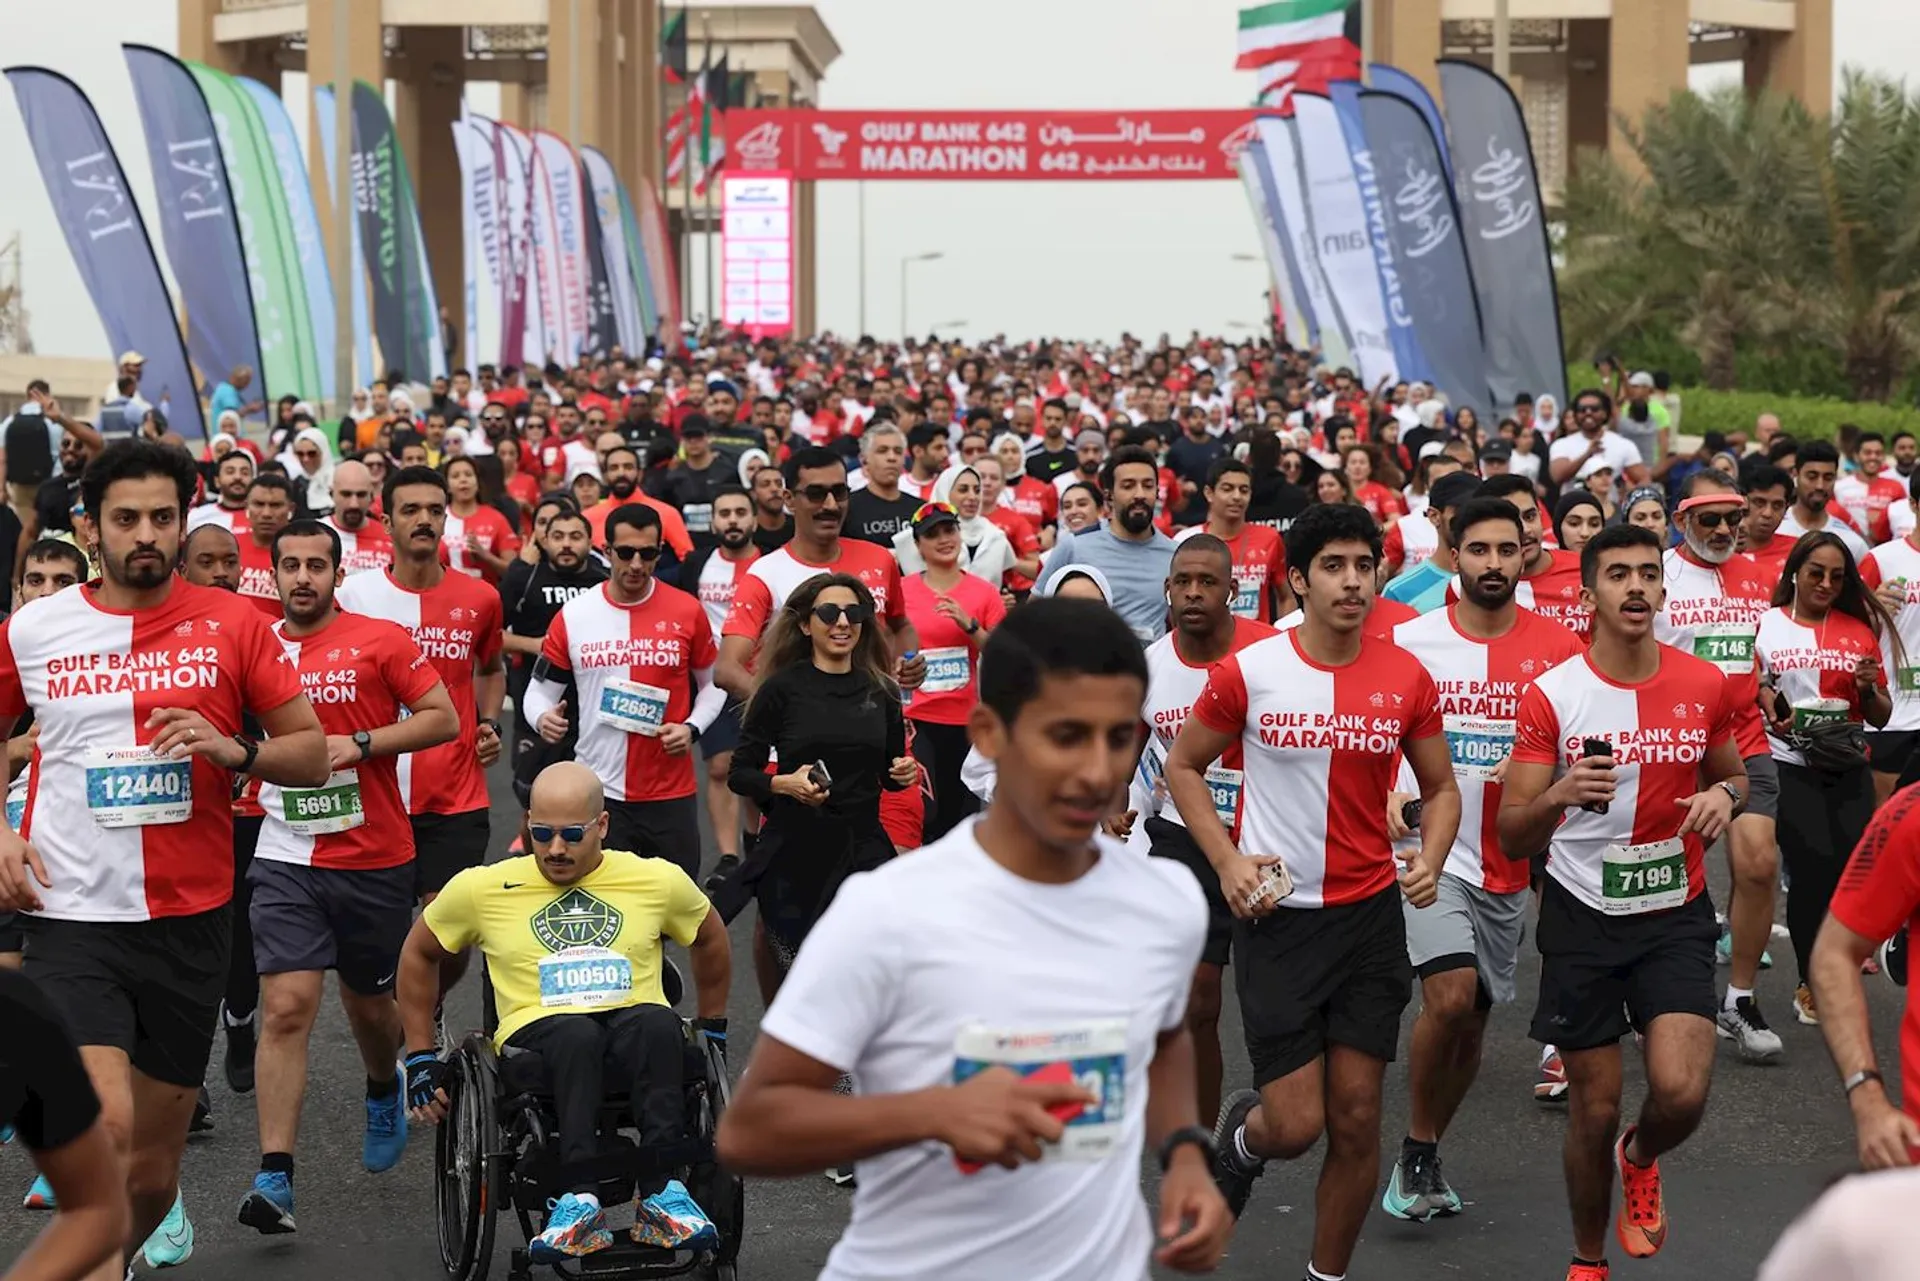 Gulf Bank 642 Marathon